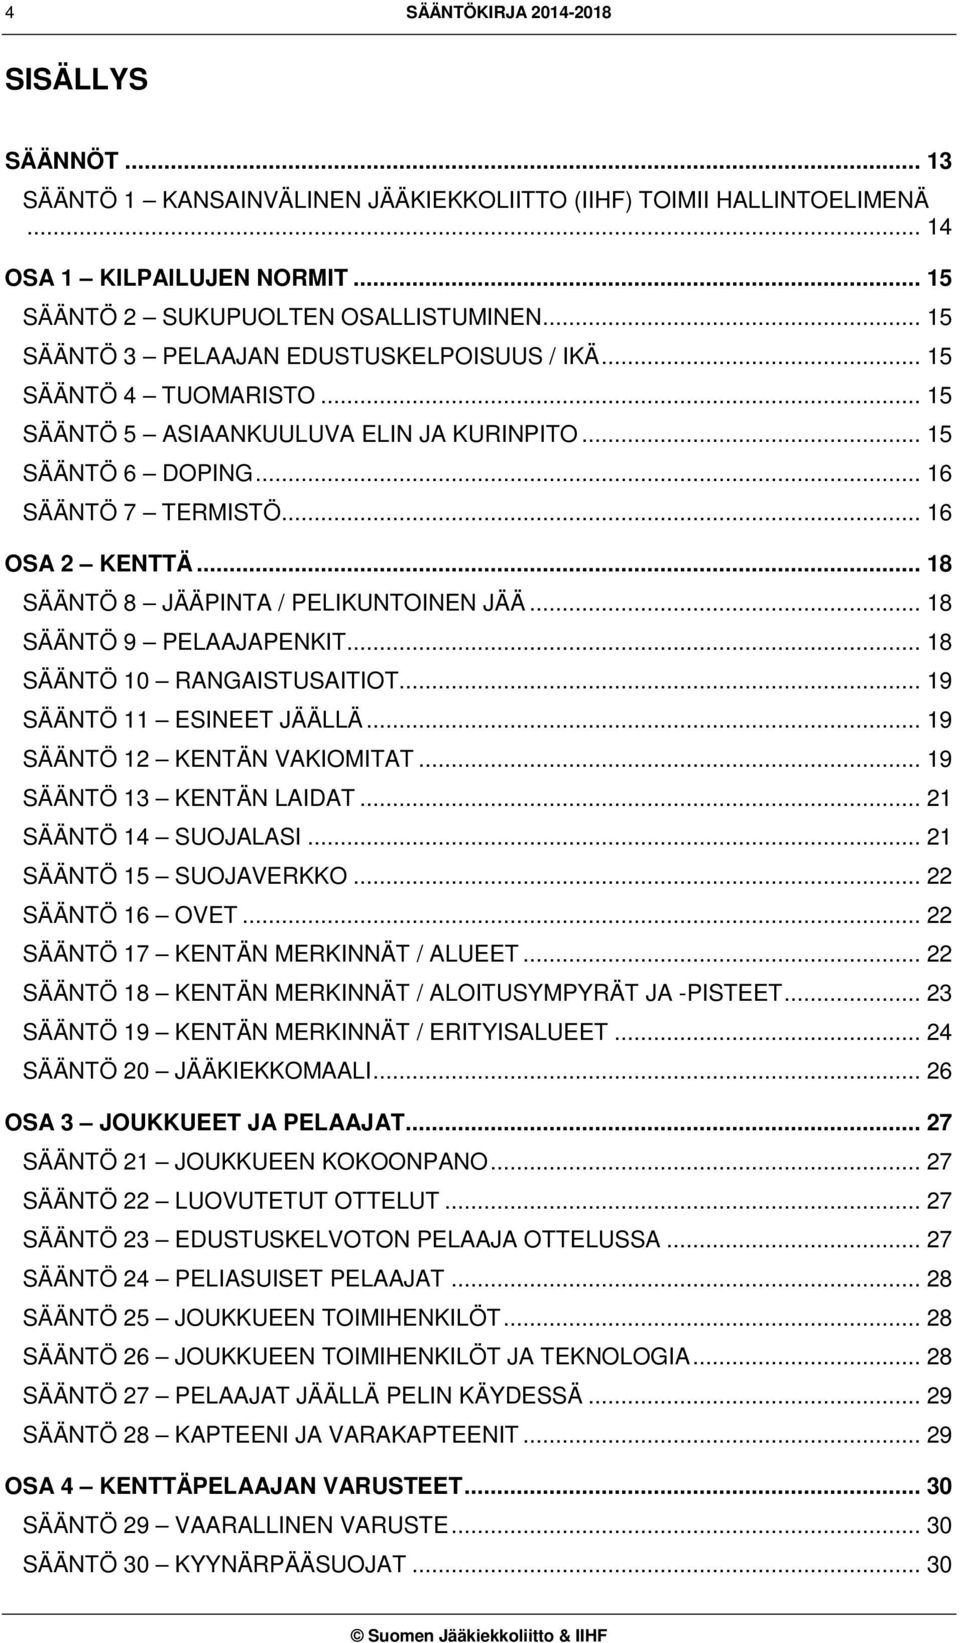 .. 18 SÄÄNTÖ 8 JÄÄPINTA / PELIKUNTOINEN JÄÄ... 18 SÄÄNTÖ 9 PELAAJAPENKIT... 18 SÄÄNTÖ 10 RANGAISTUSAITIOT... 19 SÄÄNTÖ 11 ESINEET JÄÄLLÄ... 19 SÄÄNTÖ 12 KENTÄN VAKIOMITAT... 19 SÄÄNTÖ 13 KENTÄN LAIDAT.